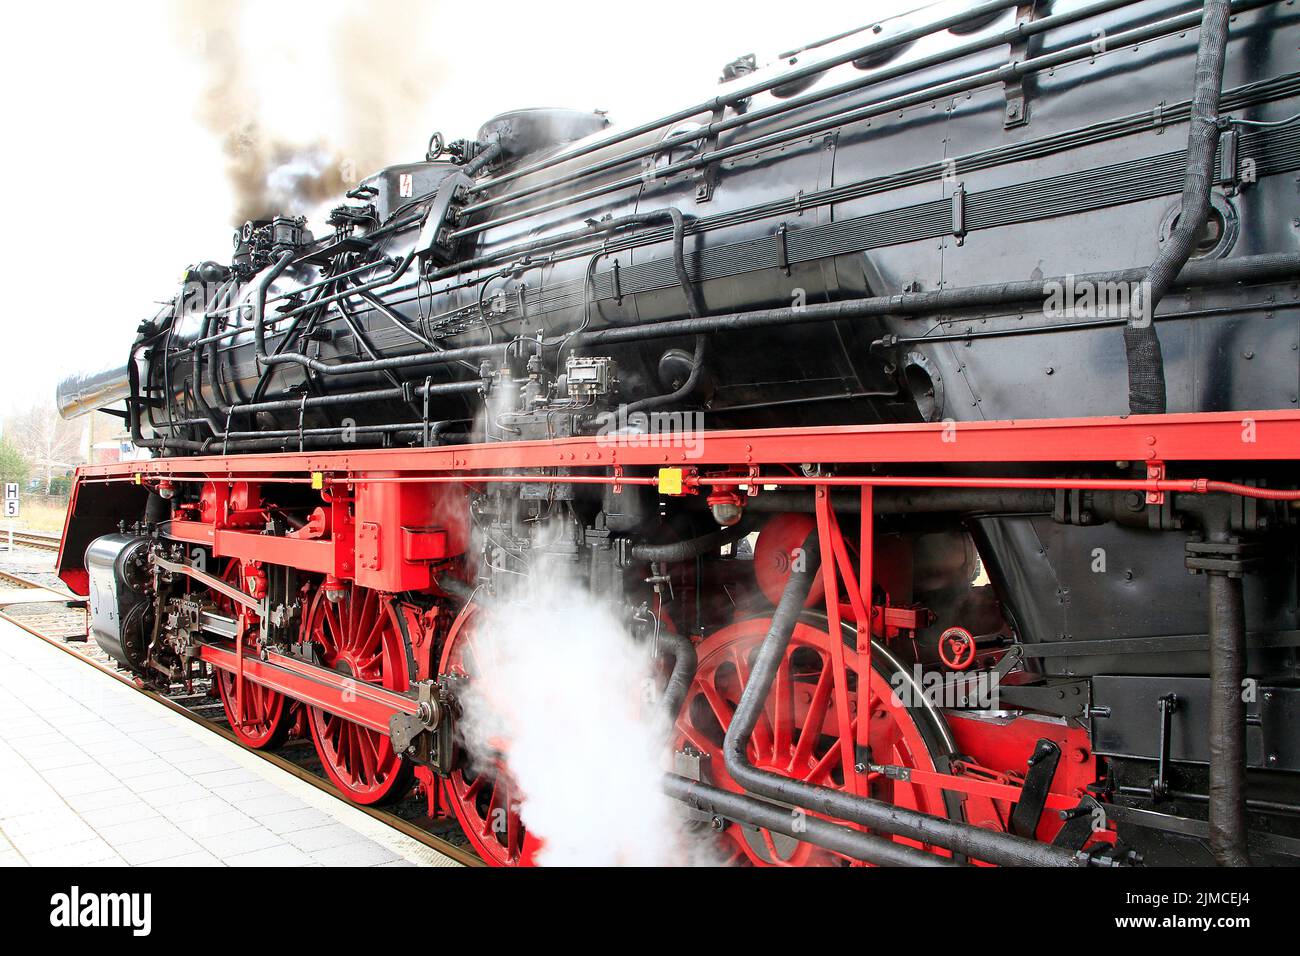 Steam locomotive, locomotive, Schmalkalden, Meiningen, Thuringia, Germany, Europe Stock Photo